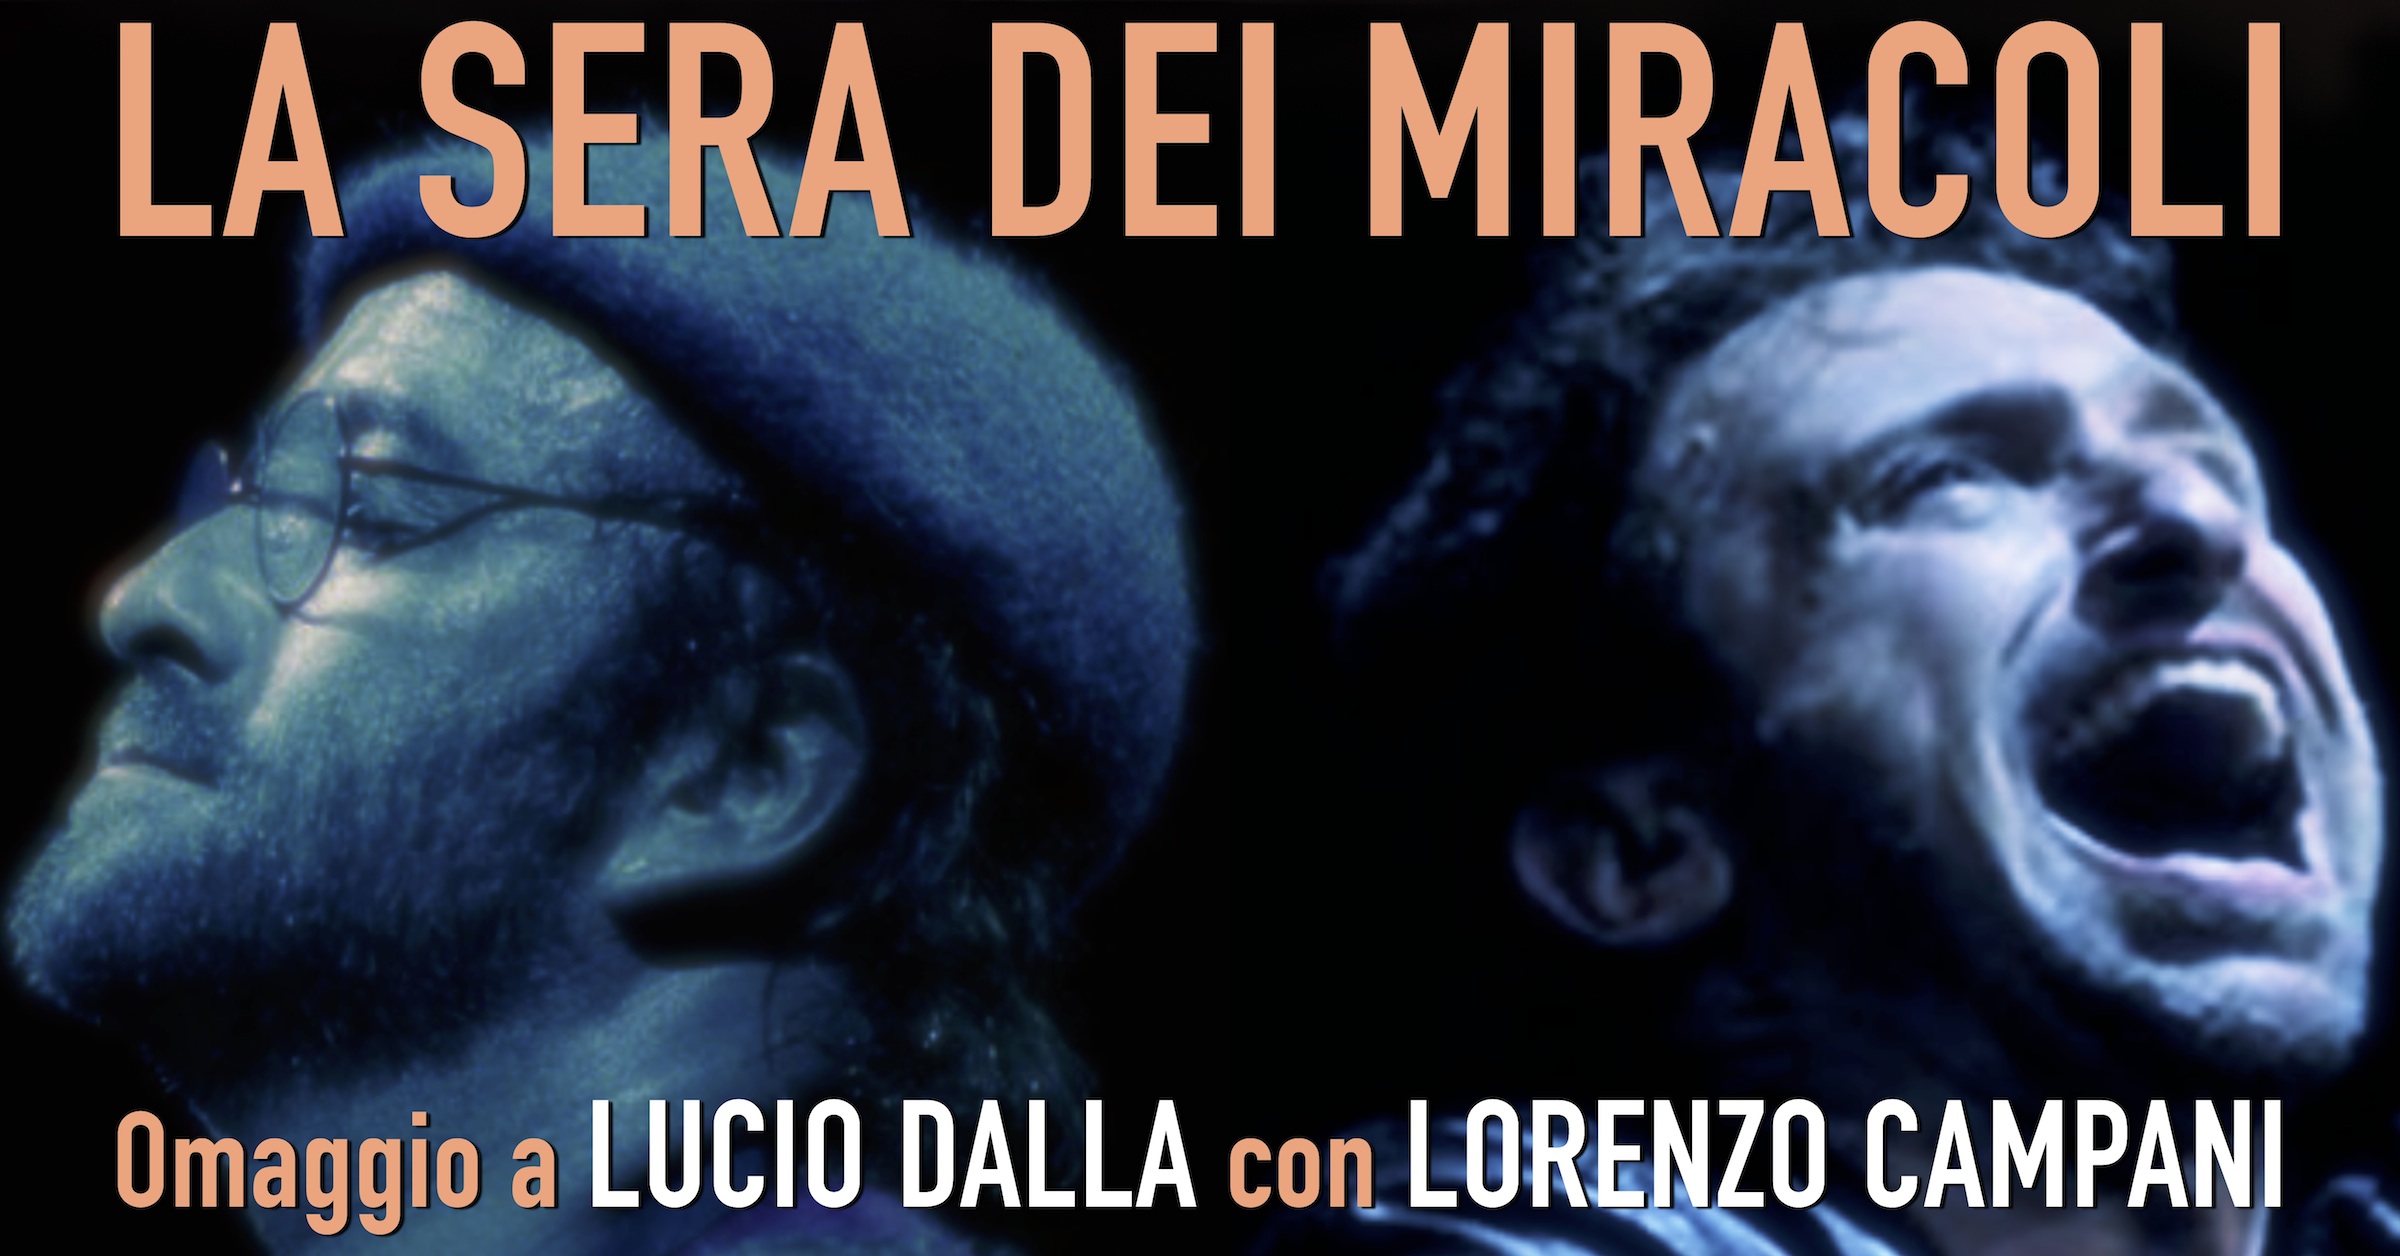 Al momento stai visualizzando Omaggio a Lucio Dalla “La sera dei miracoli” con Lorenzo Campani per Verdid’Estate martedì 20 luglio, a Gorizia